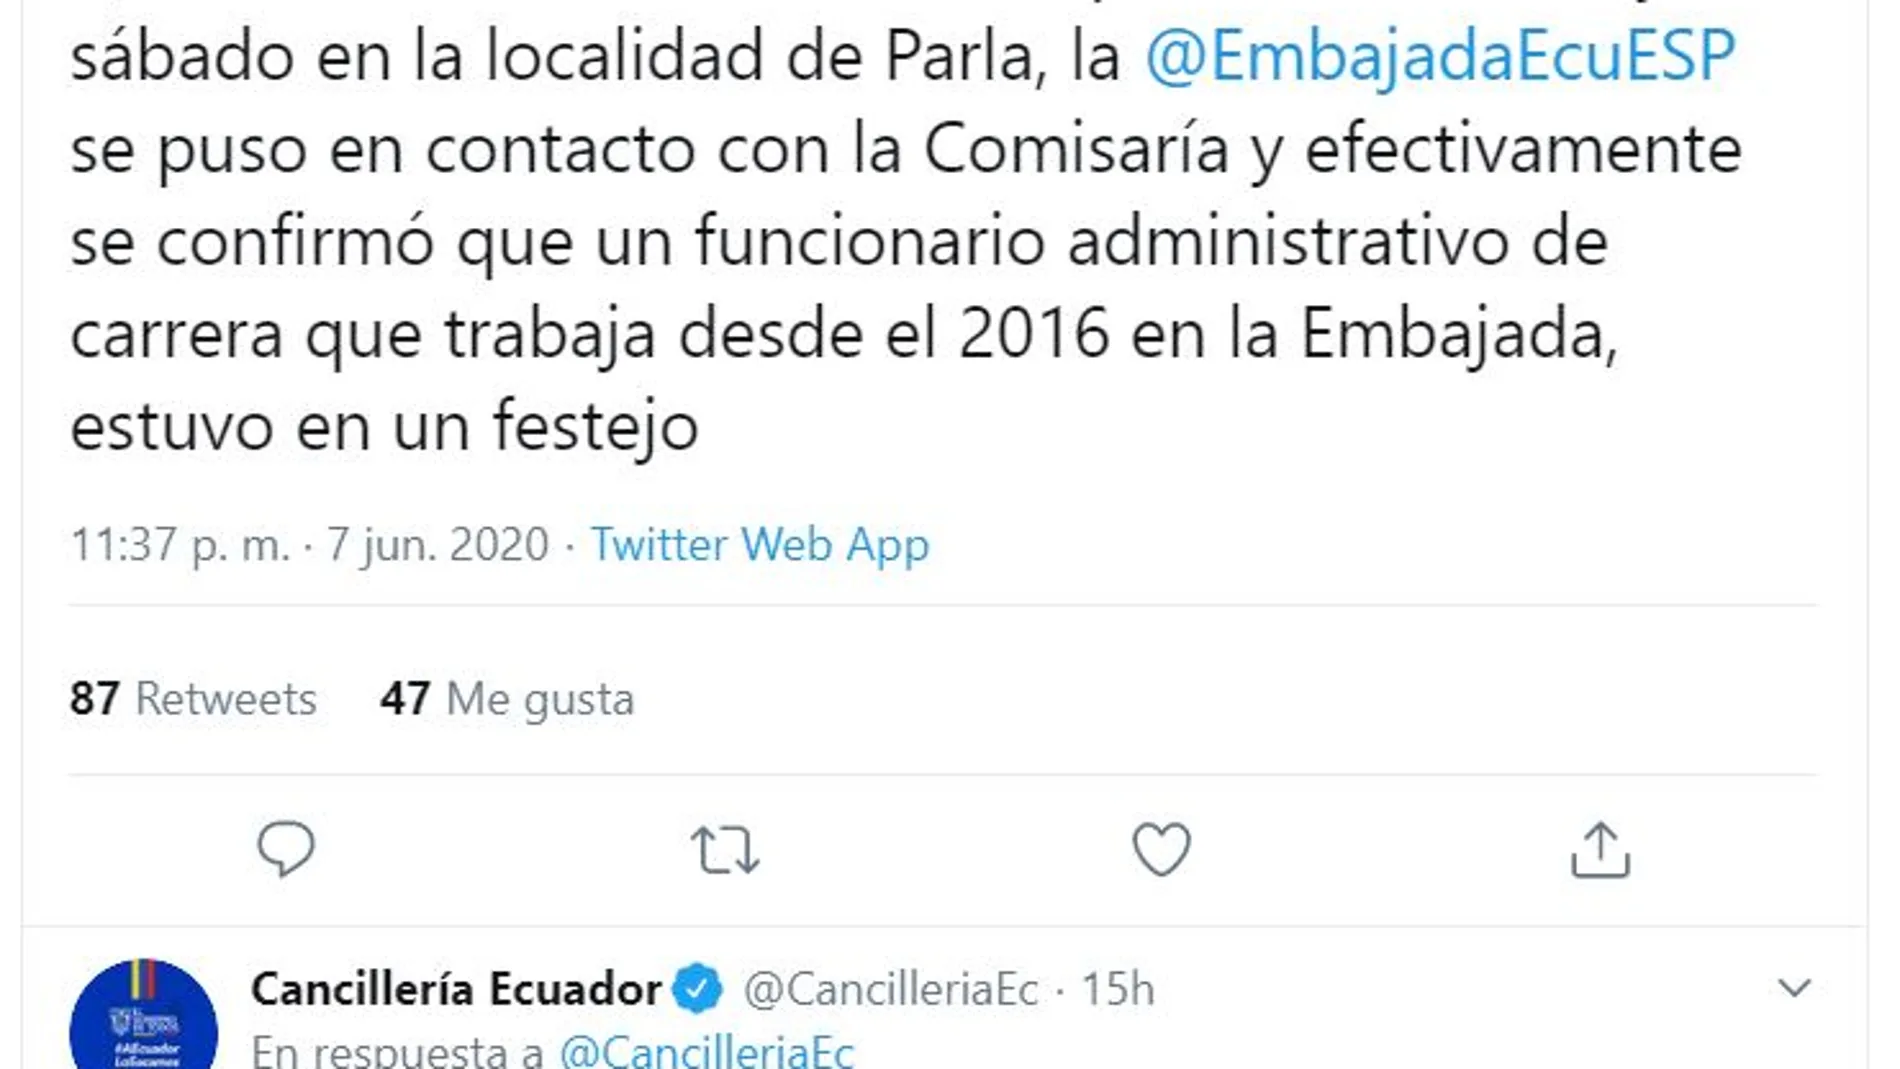 Sancionado un diplomático de la Embajada de Ecuador por hacer una parrillada de 36 personas en fase 1